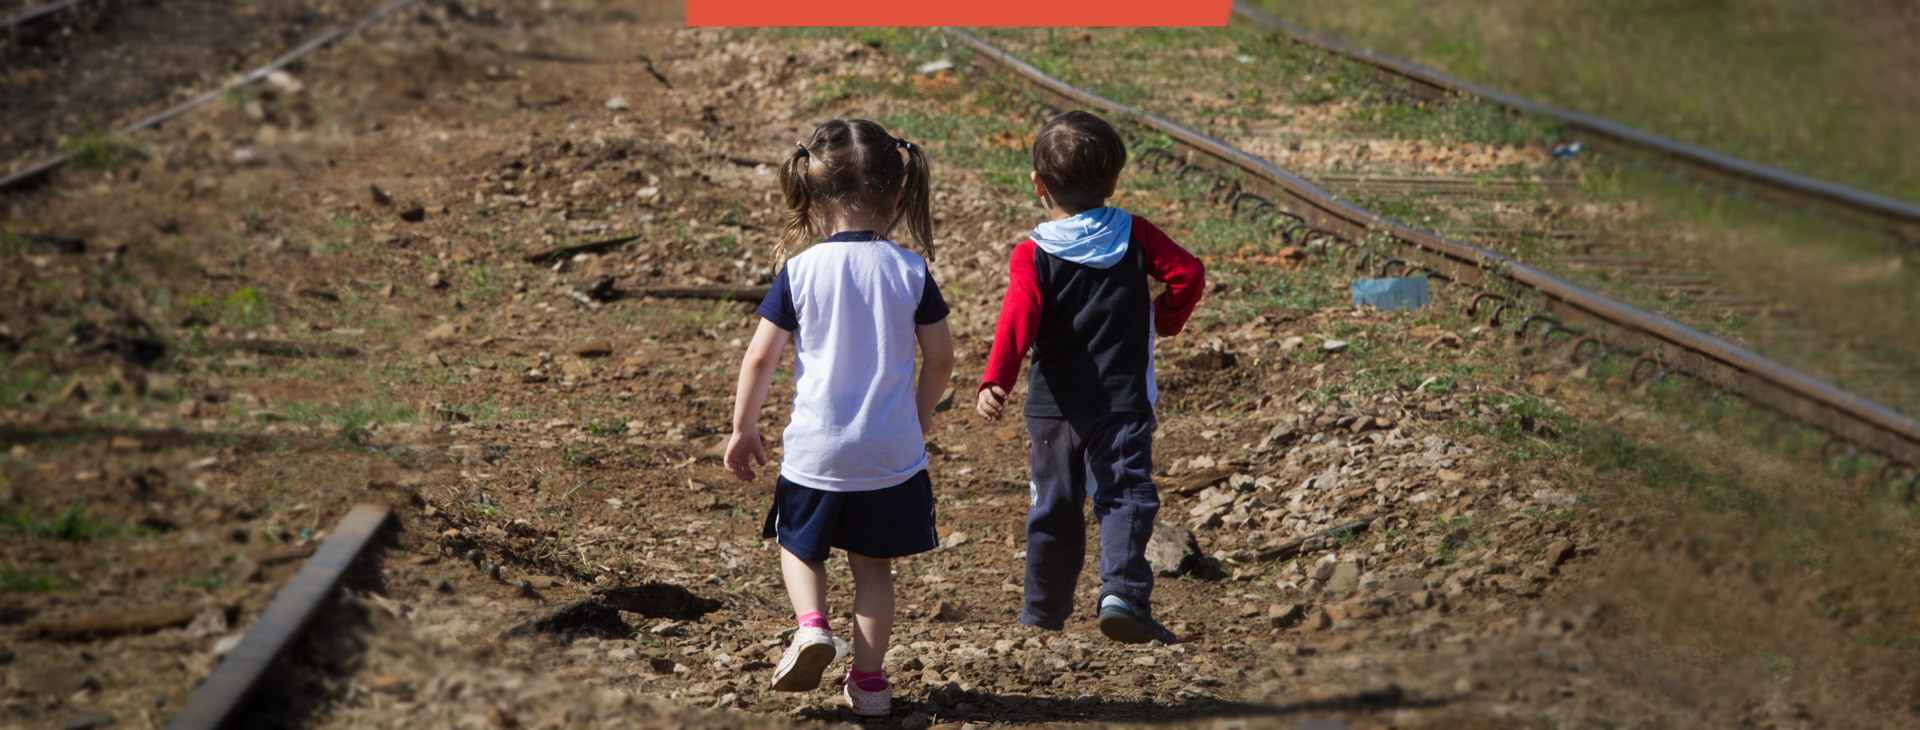 Foto de duas crianças de costas, caminhando sobre um caminho de terra